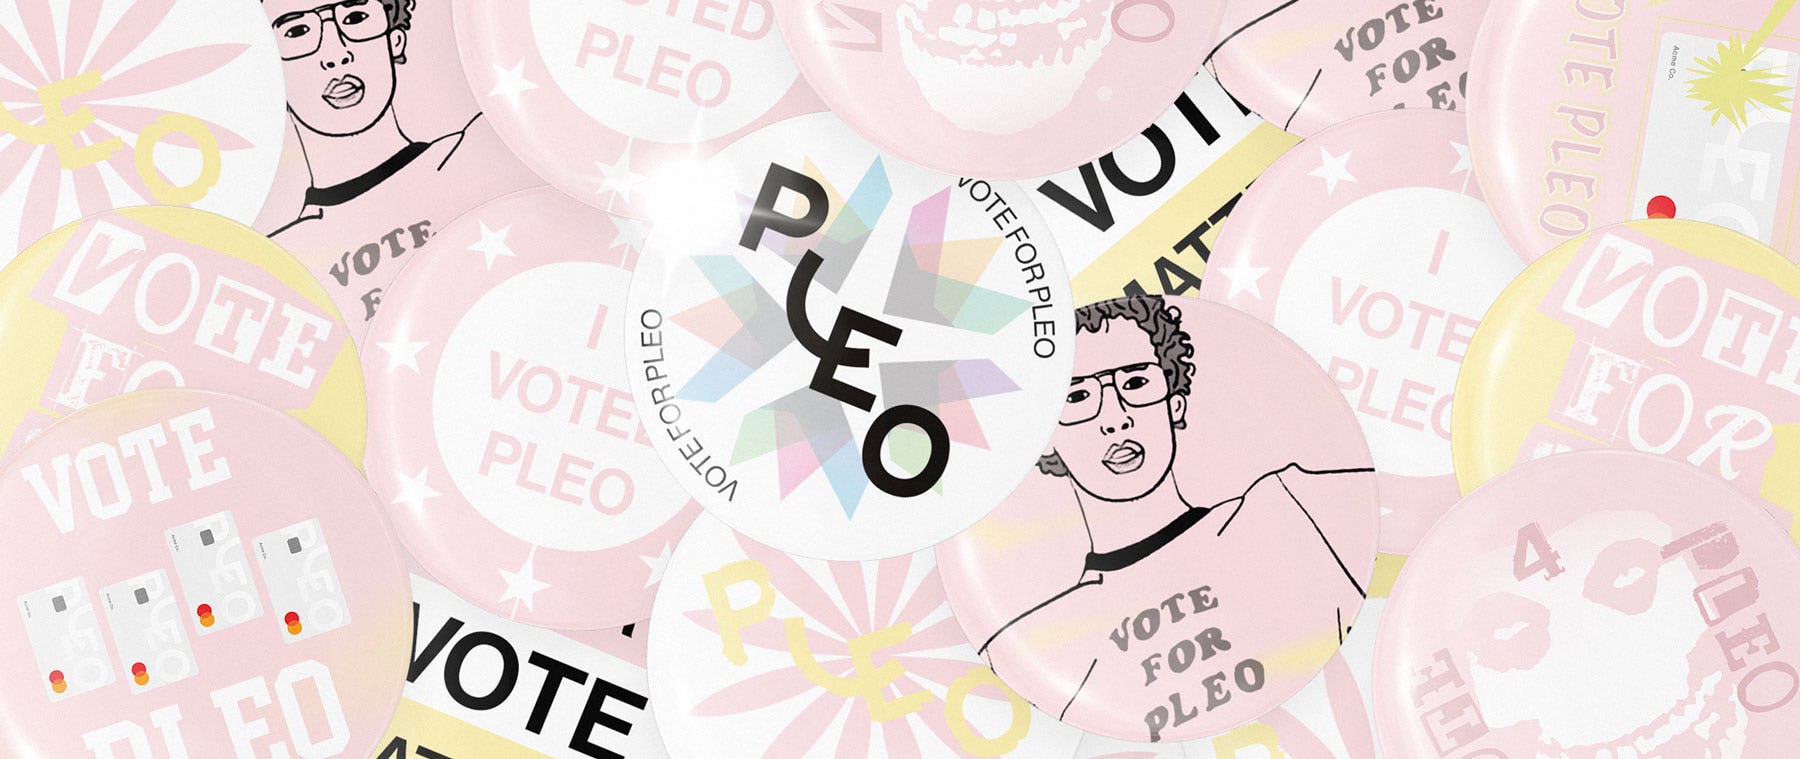 Pleo is free until April 2021